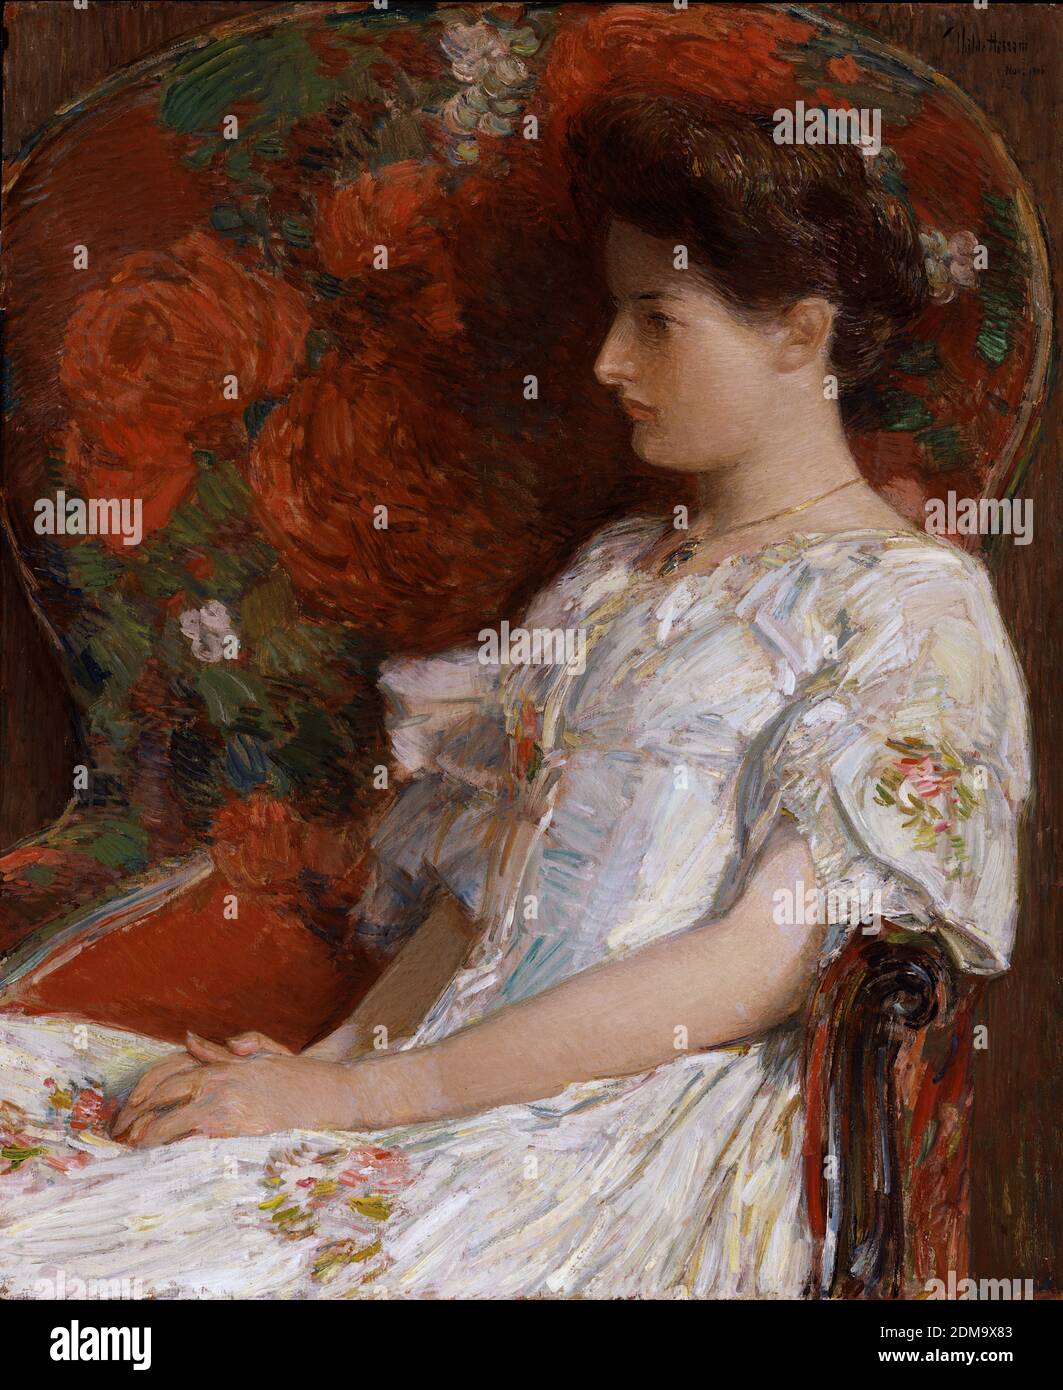 Der viktorianische Stuhl 1906 American Impressionist Gemälde von Childe Hassam - sehr hohe Auflösung und Qualität Bild Stockfoto